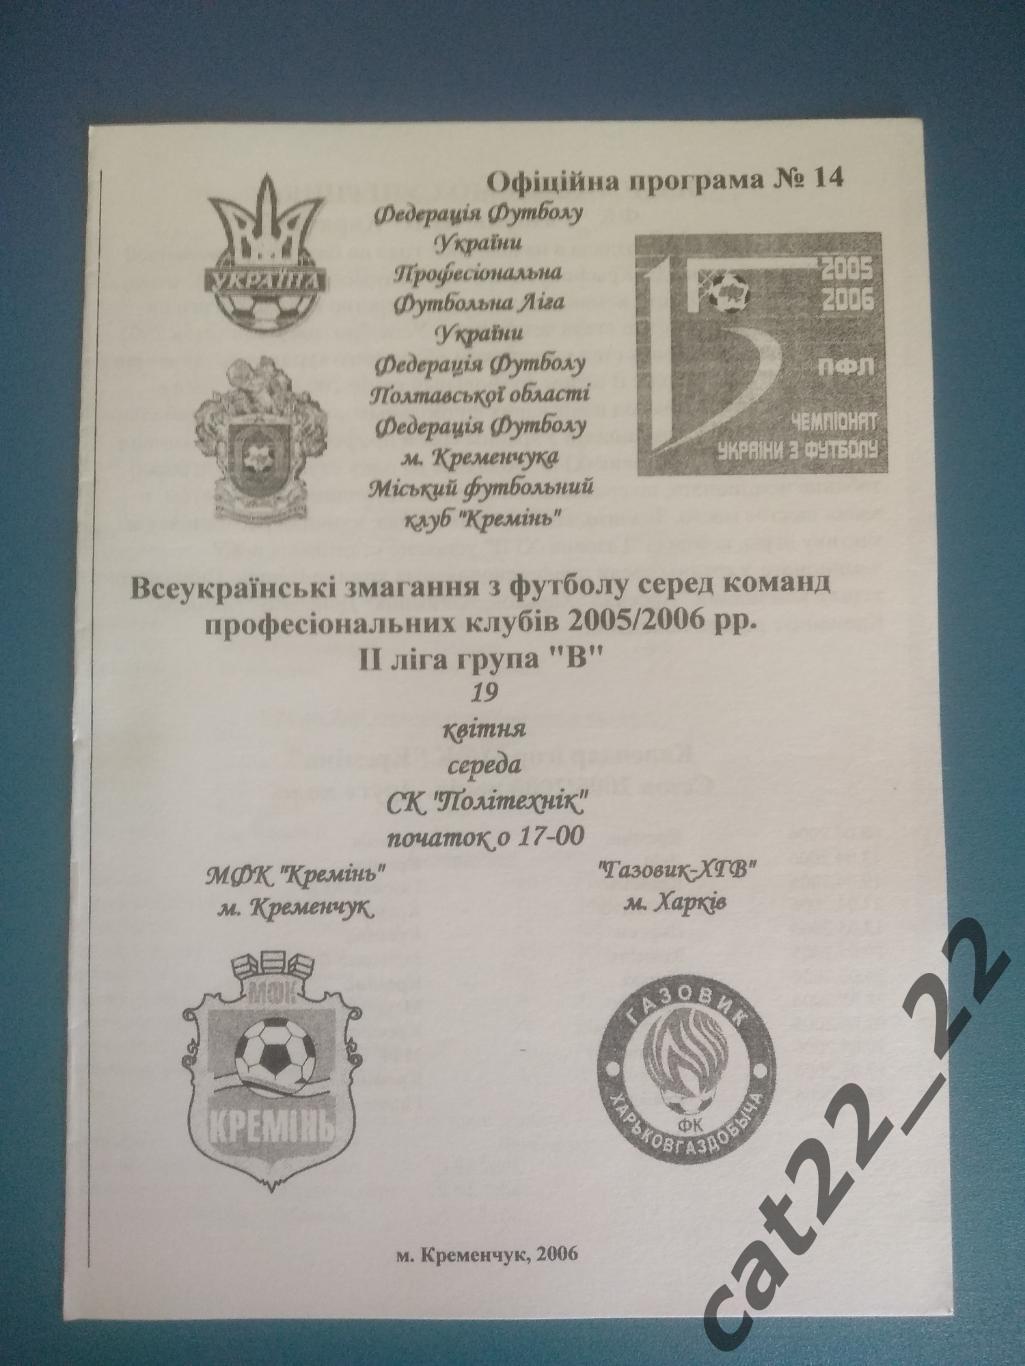 МФК Кремень Кременчуг - Газовик - ХГВ Харьков 2005/2006